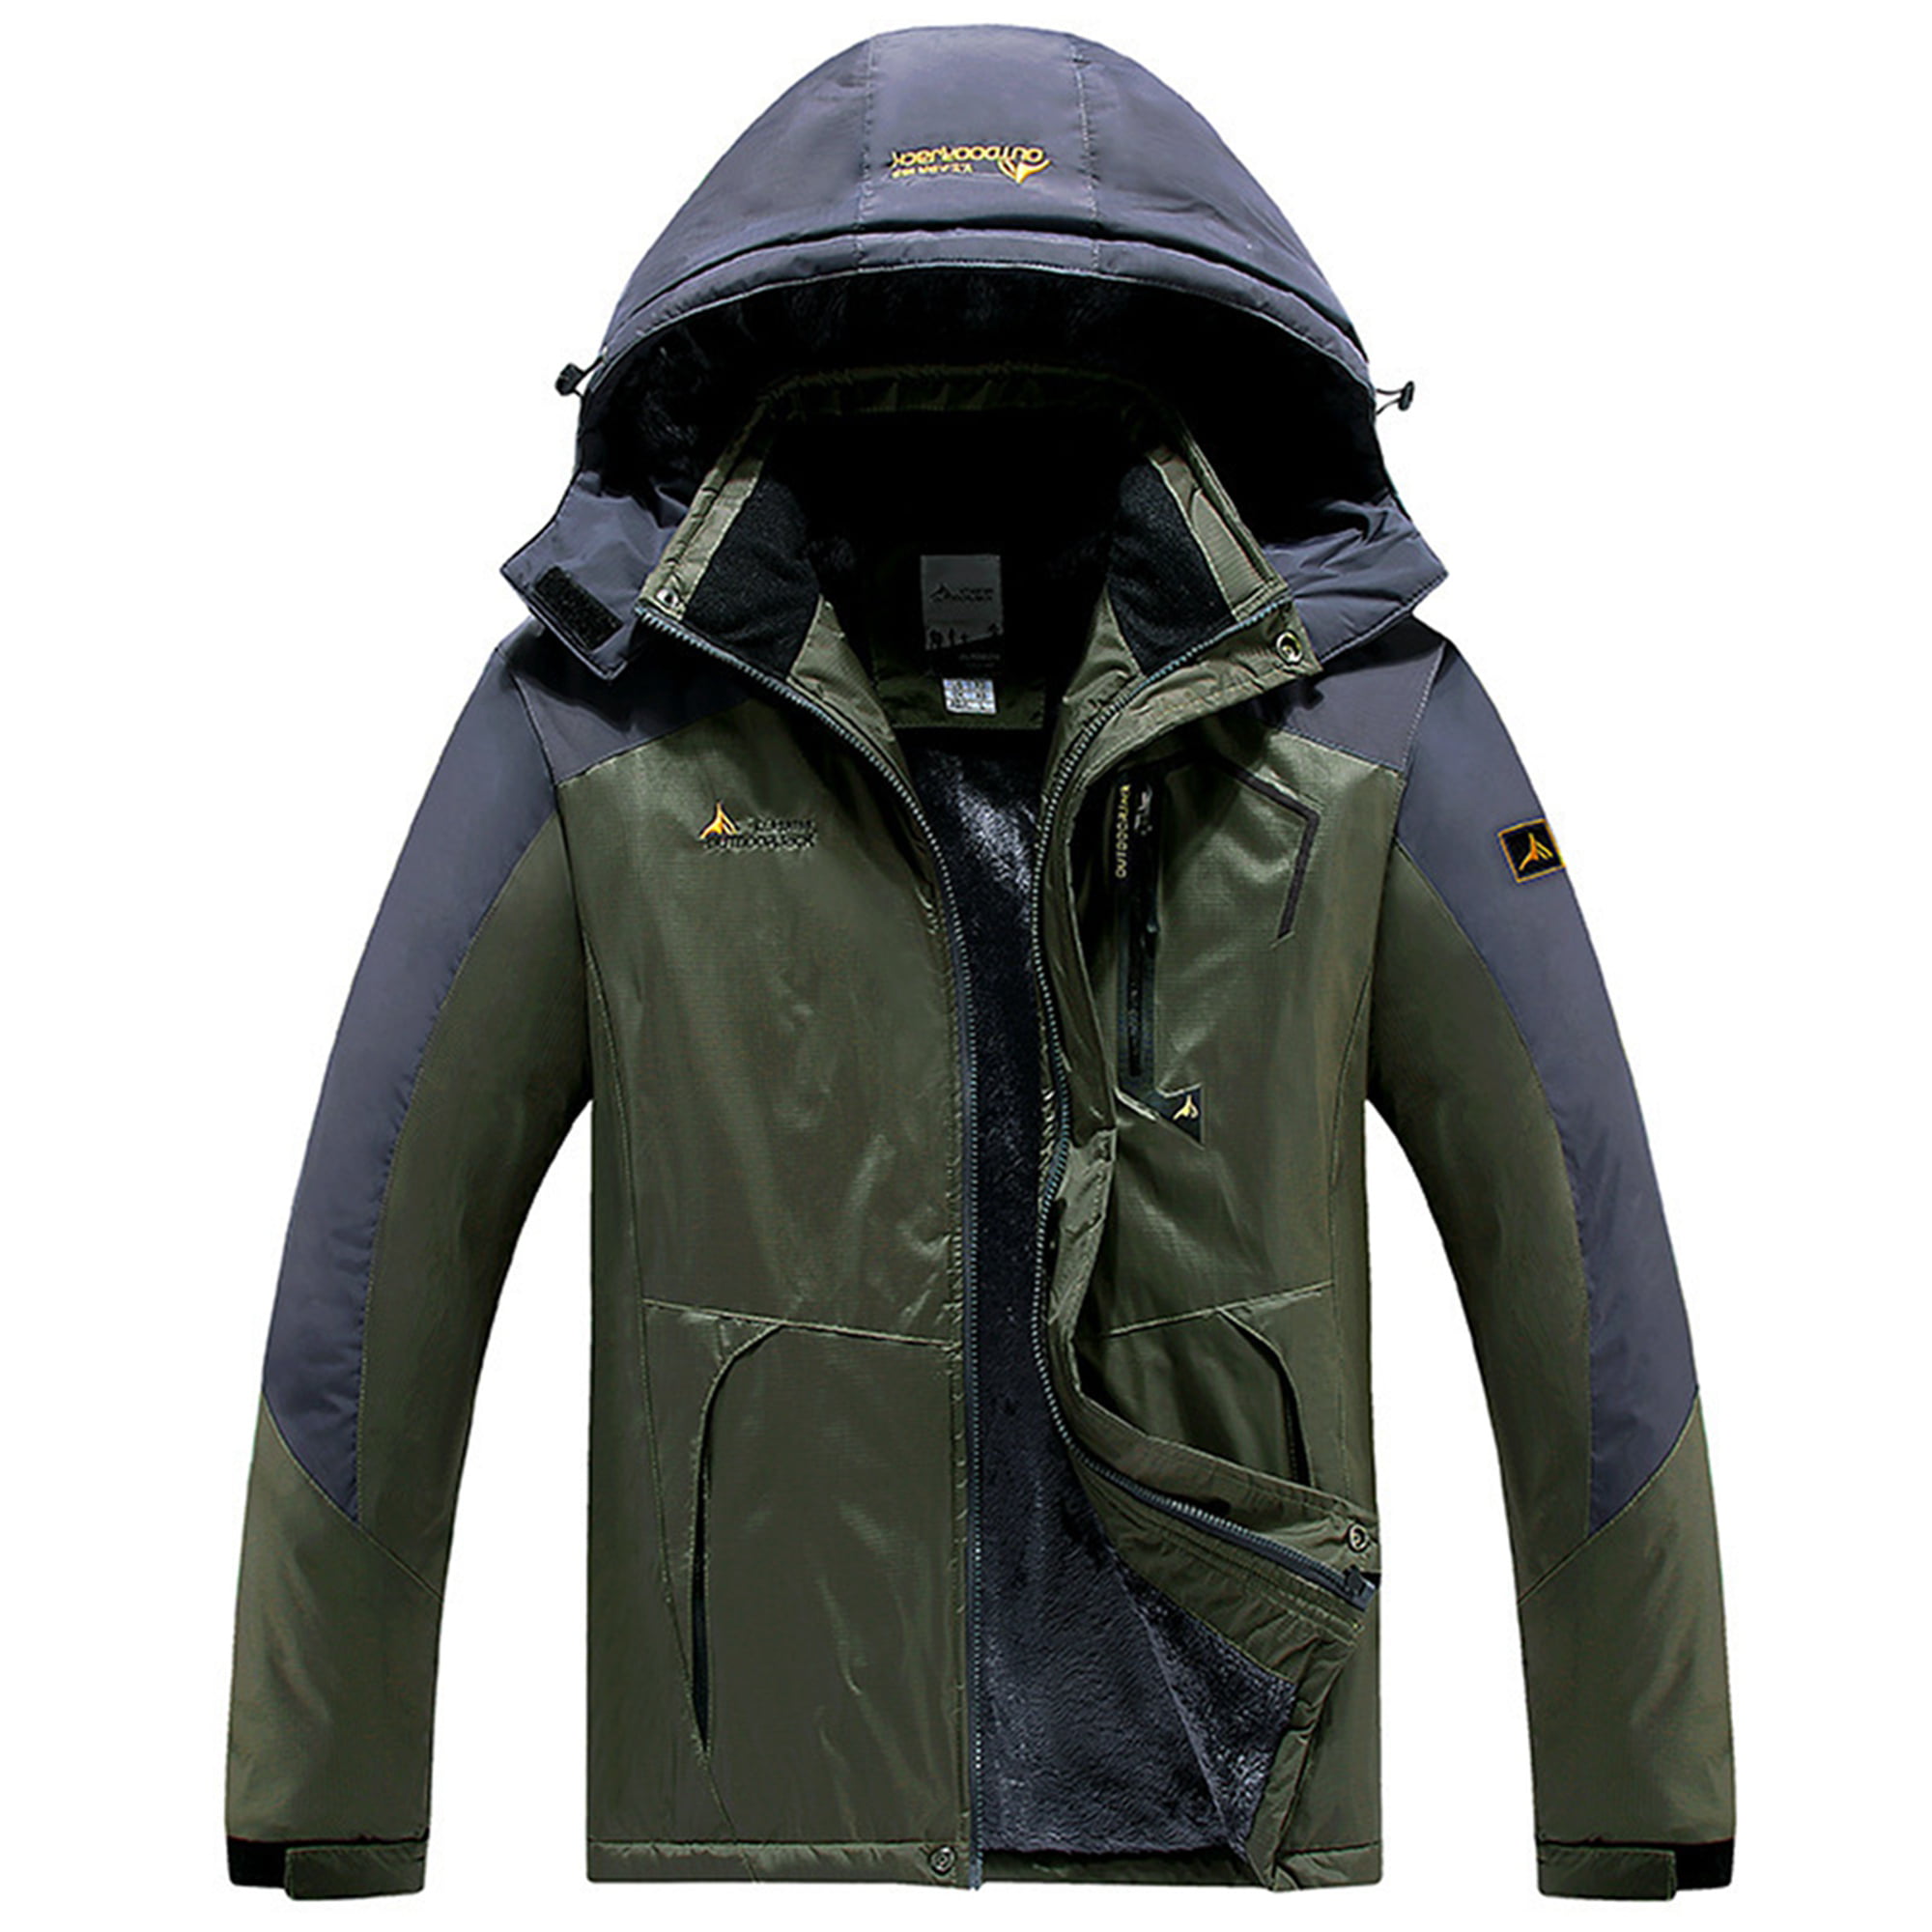 TACVASEN Mens Outdoor Jacket Waterproof Fleece Jacket Winter Skiing Jacket Warm Hiking Jacket with Detachable Hood